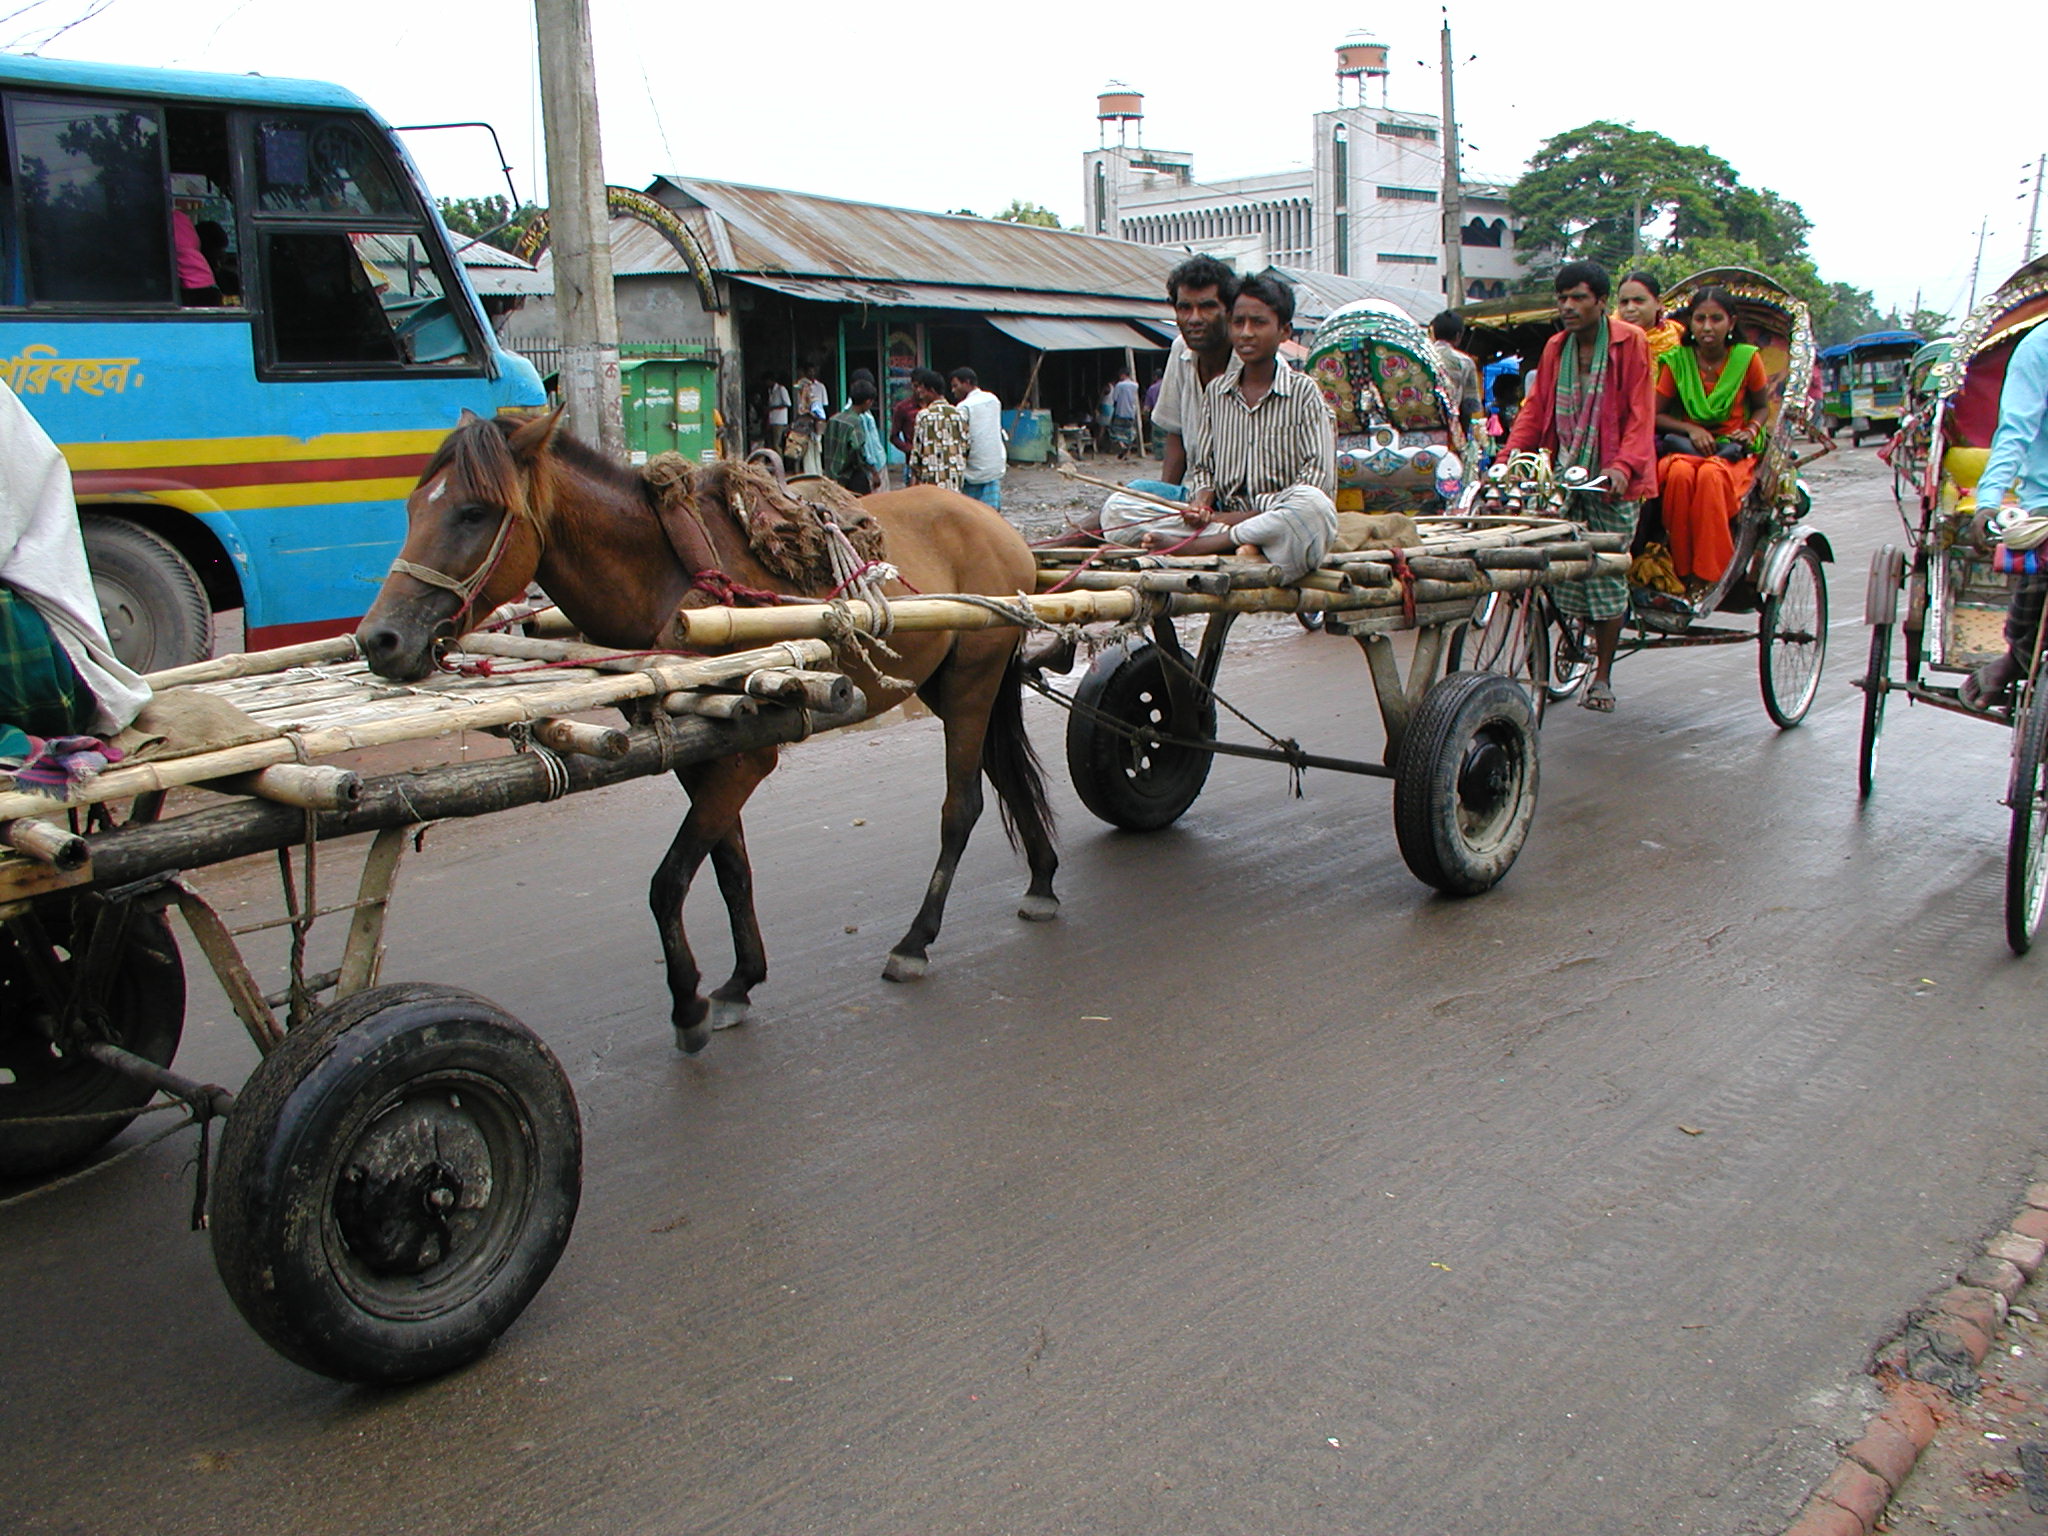 Horse-drawn carts